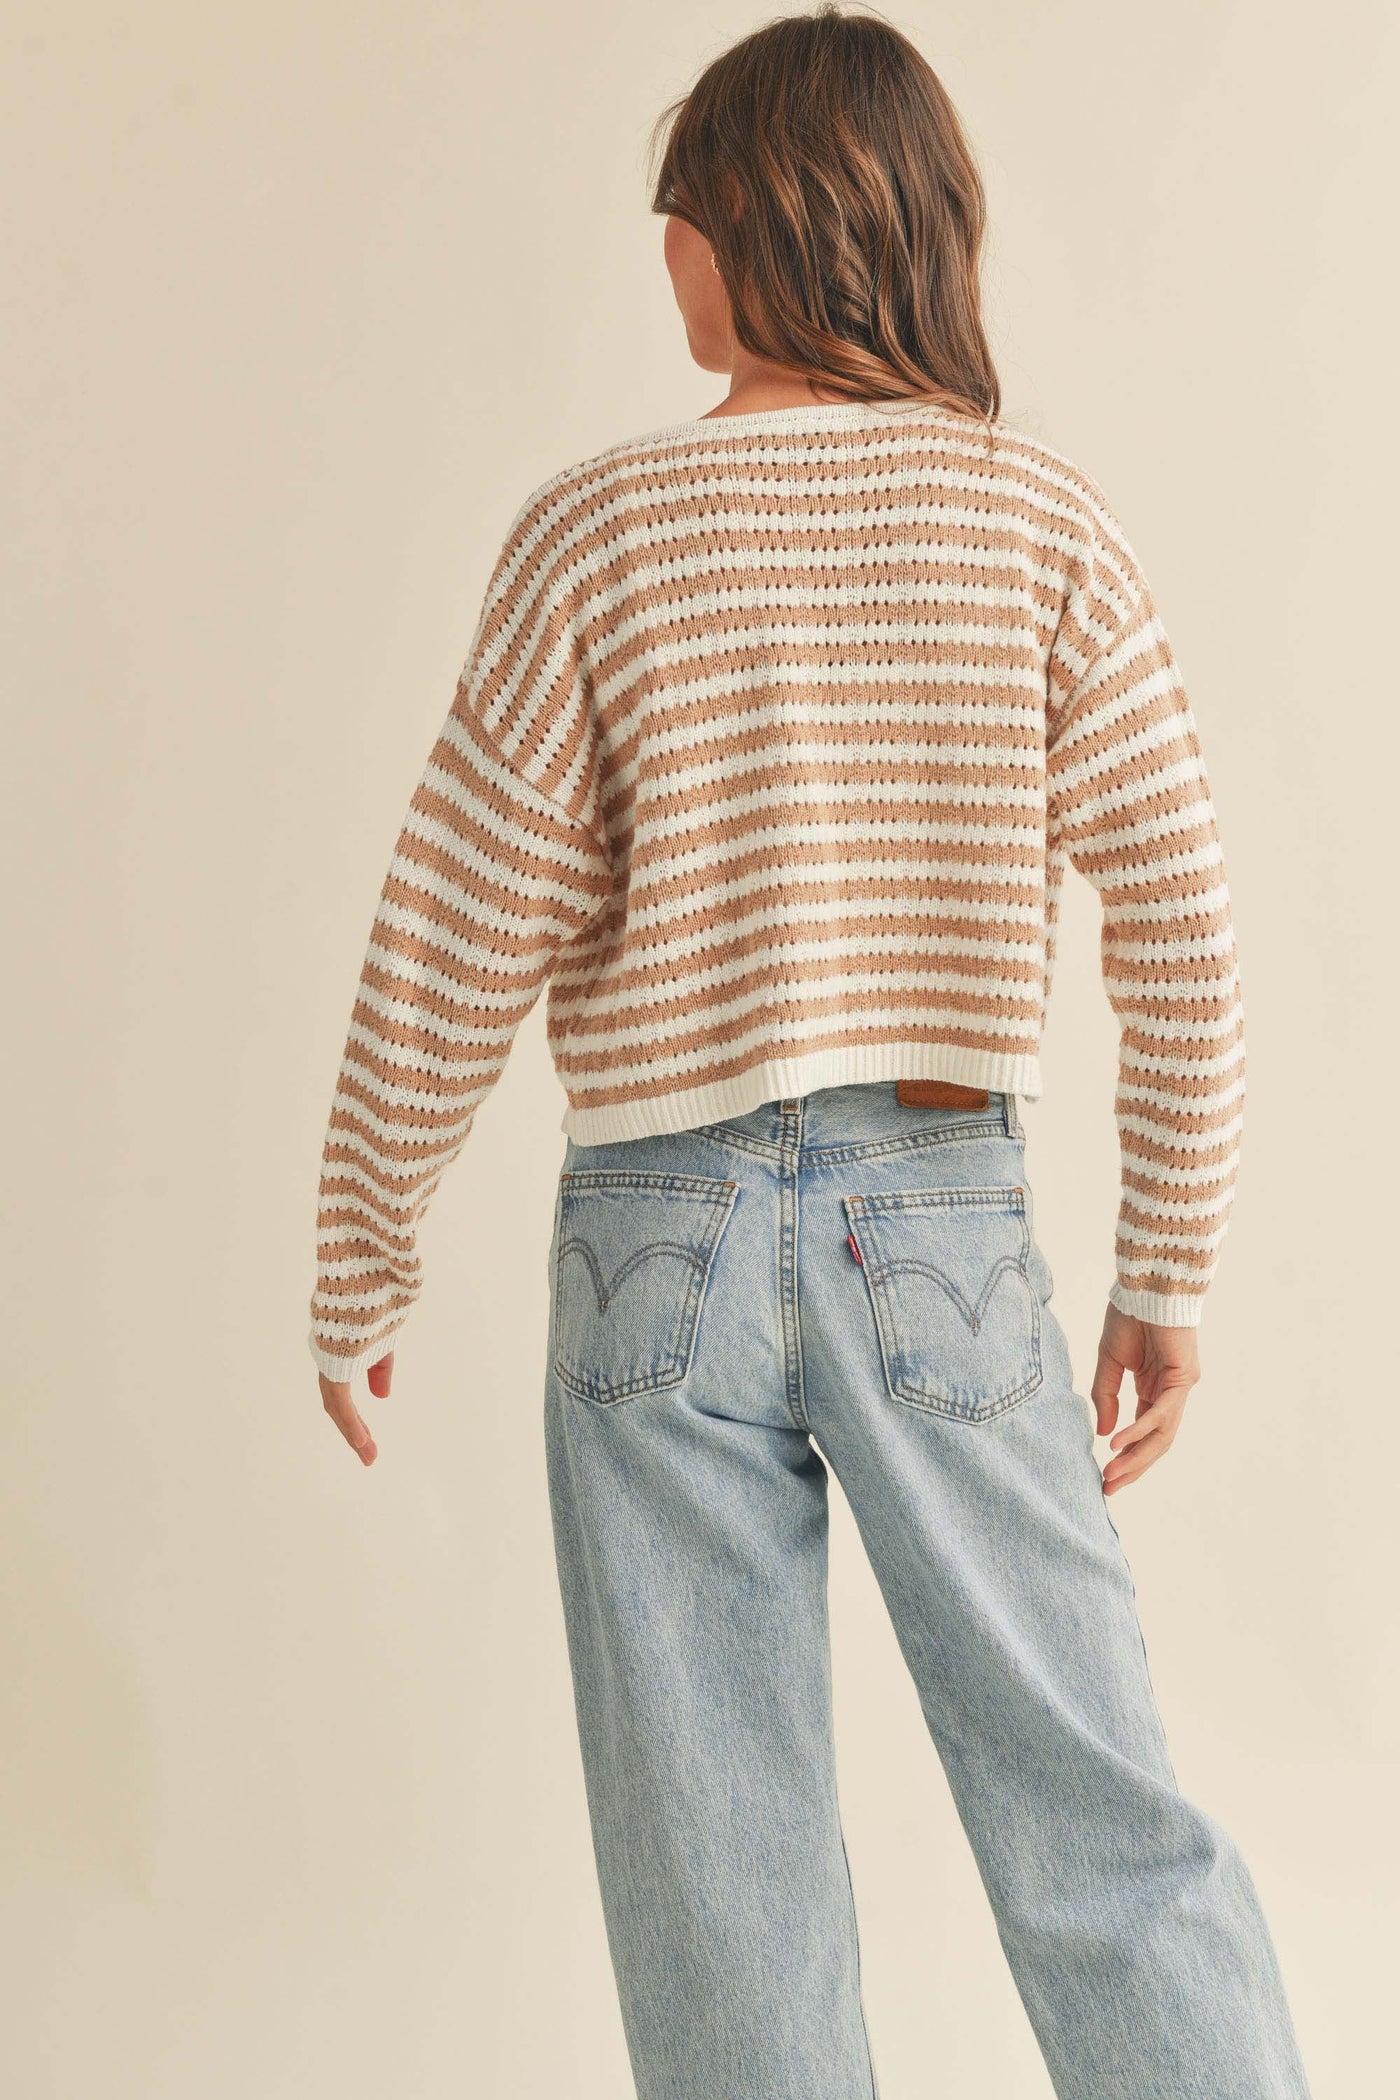 The Boardwalk Striped Tan Cardigan Sweater